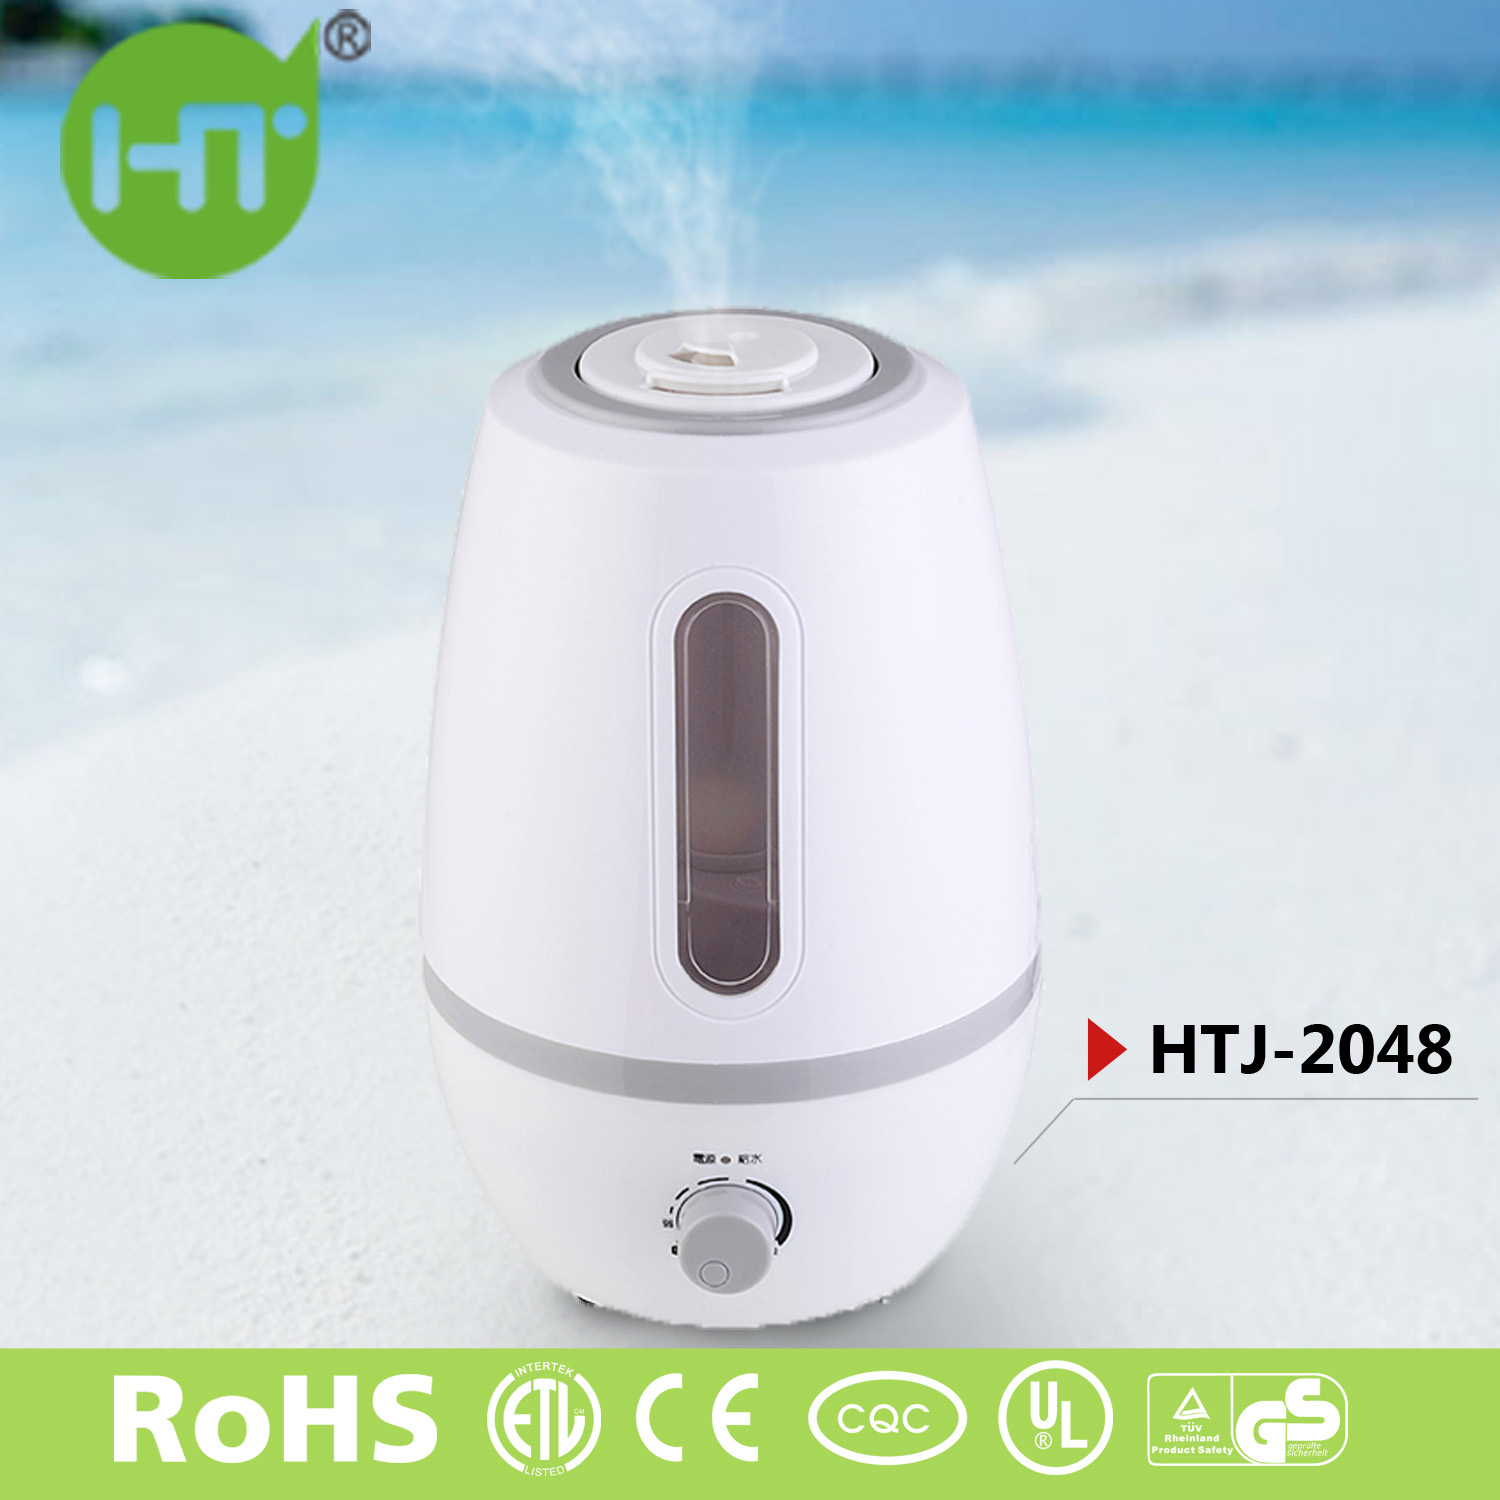 HTJ-2048 2.6L Jade-Like High-Class Elegant Cool Mist Humidifier